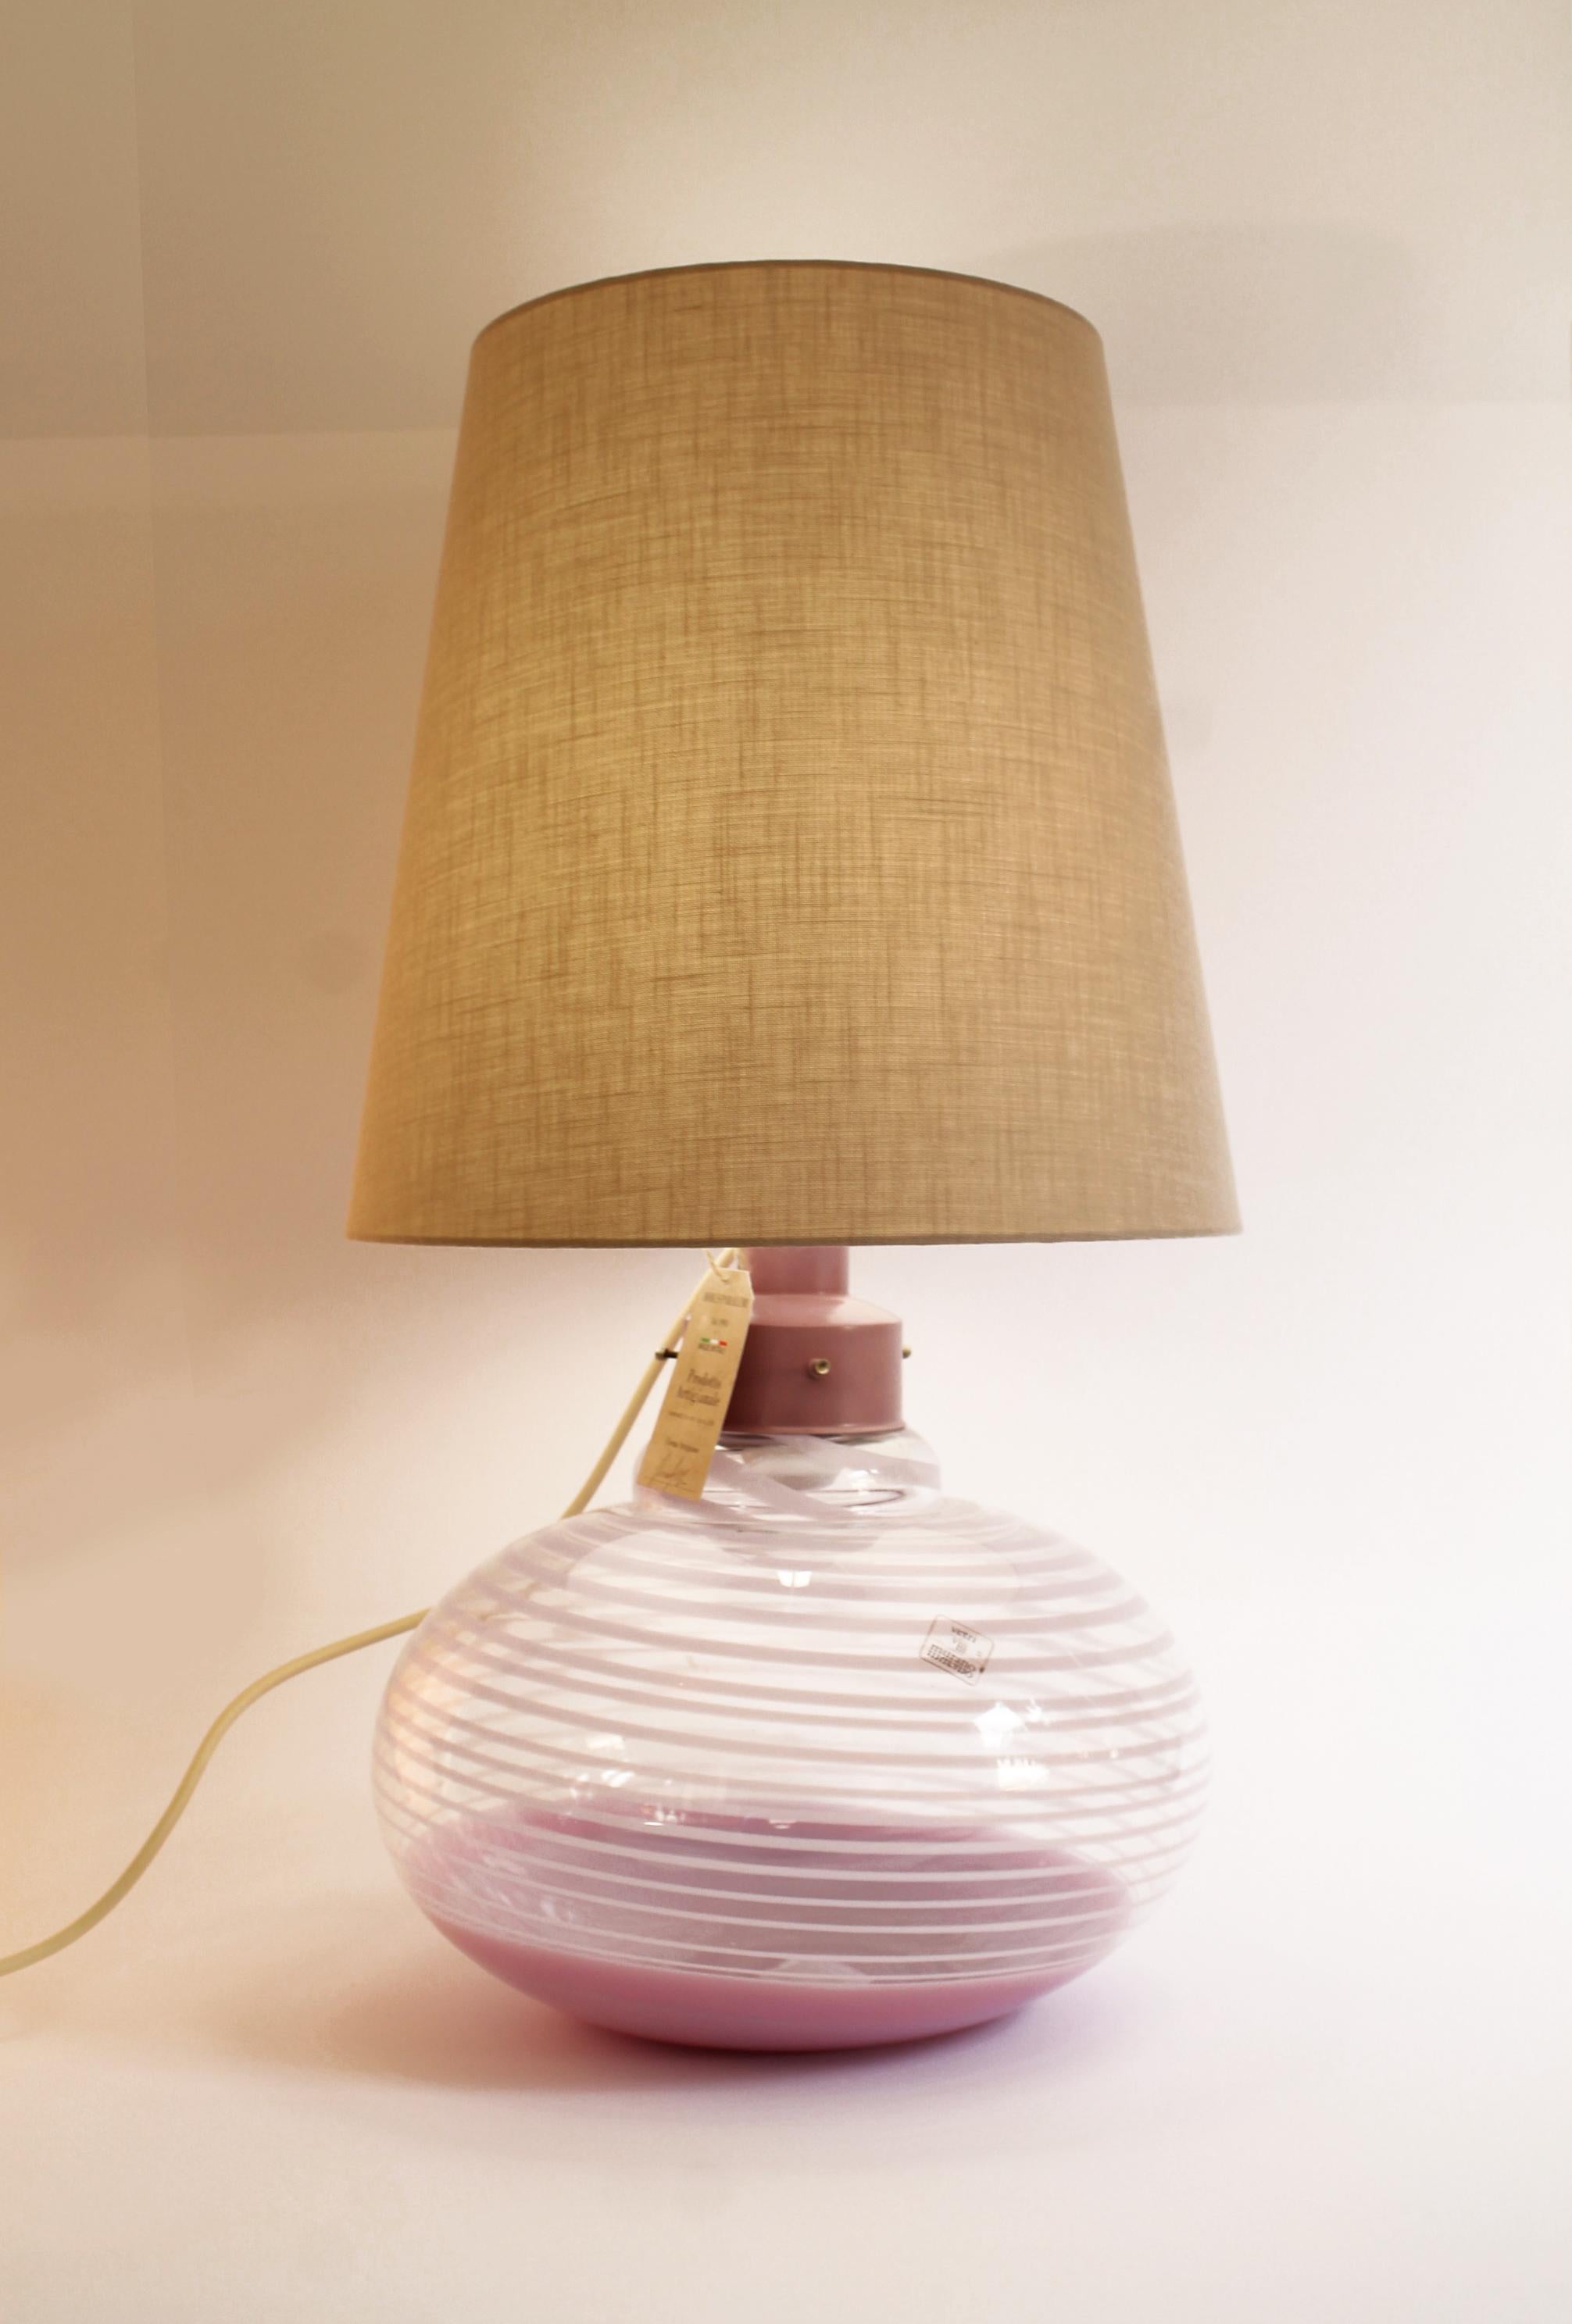 Grande lampe de table exquise en état de rareté, produite par Paolo VENINI/ Murano, Italie, dans les années 1960. 
Un véritable accroche-regard. La vraie affaire !

Description :

- La base en verre est moulée à la main et recouvre le socle de